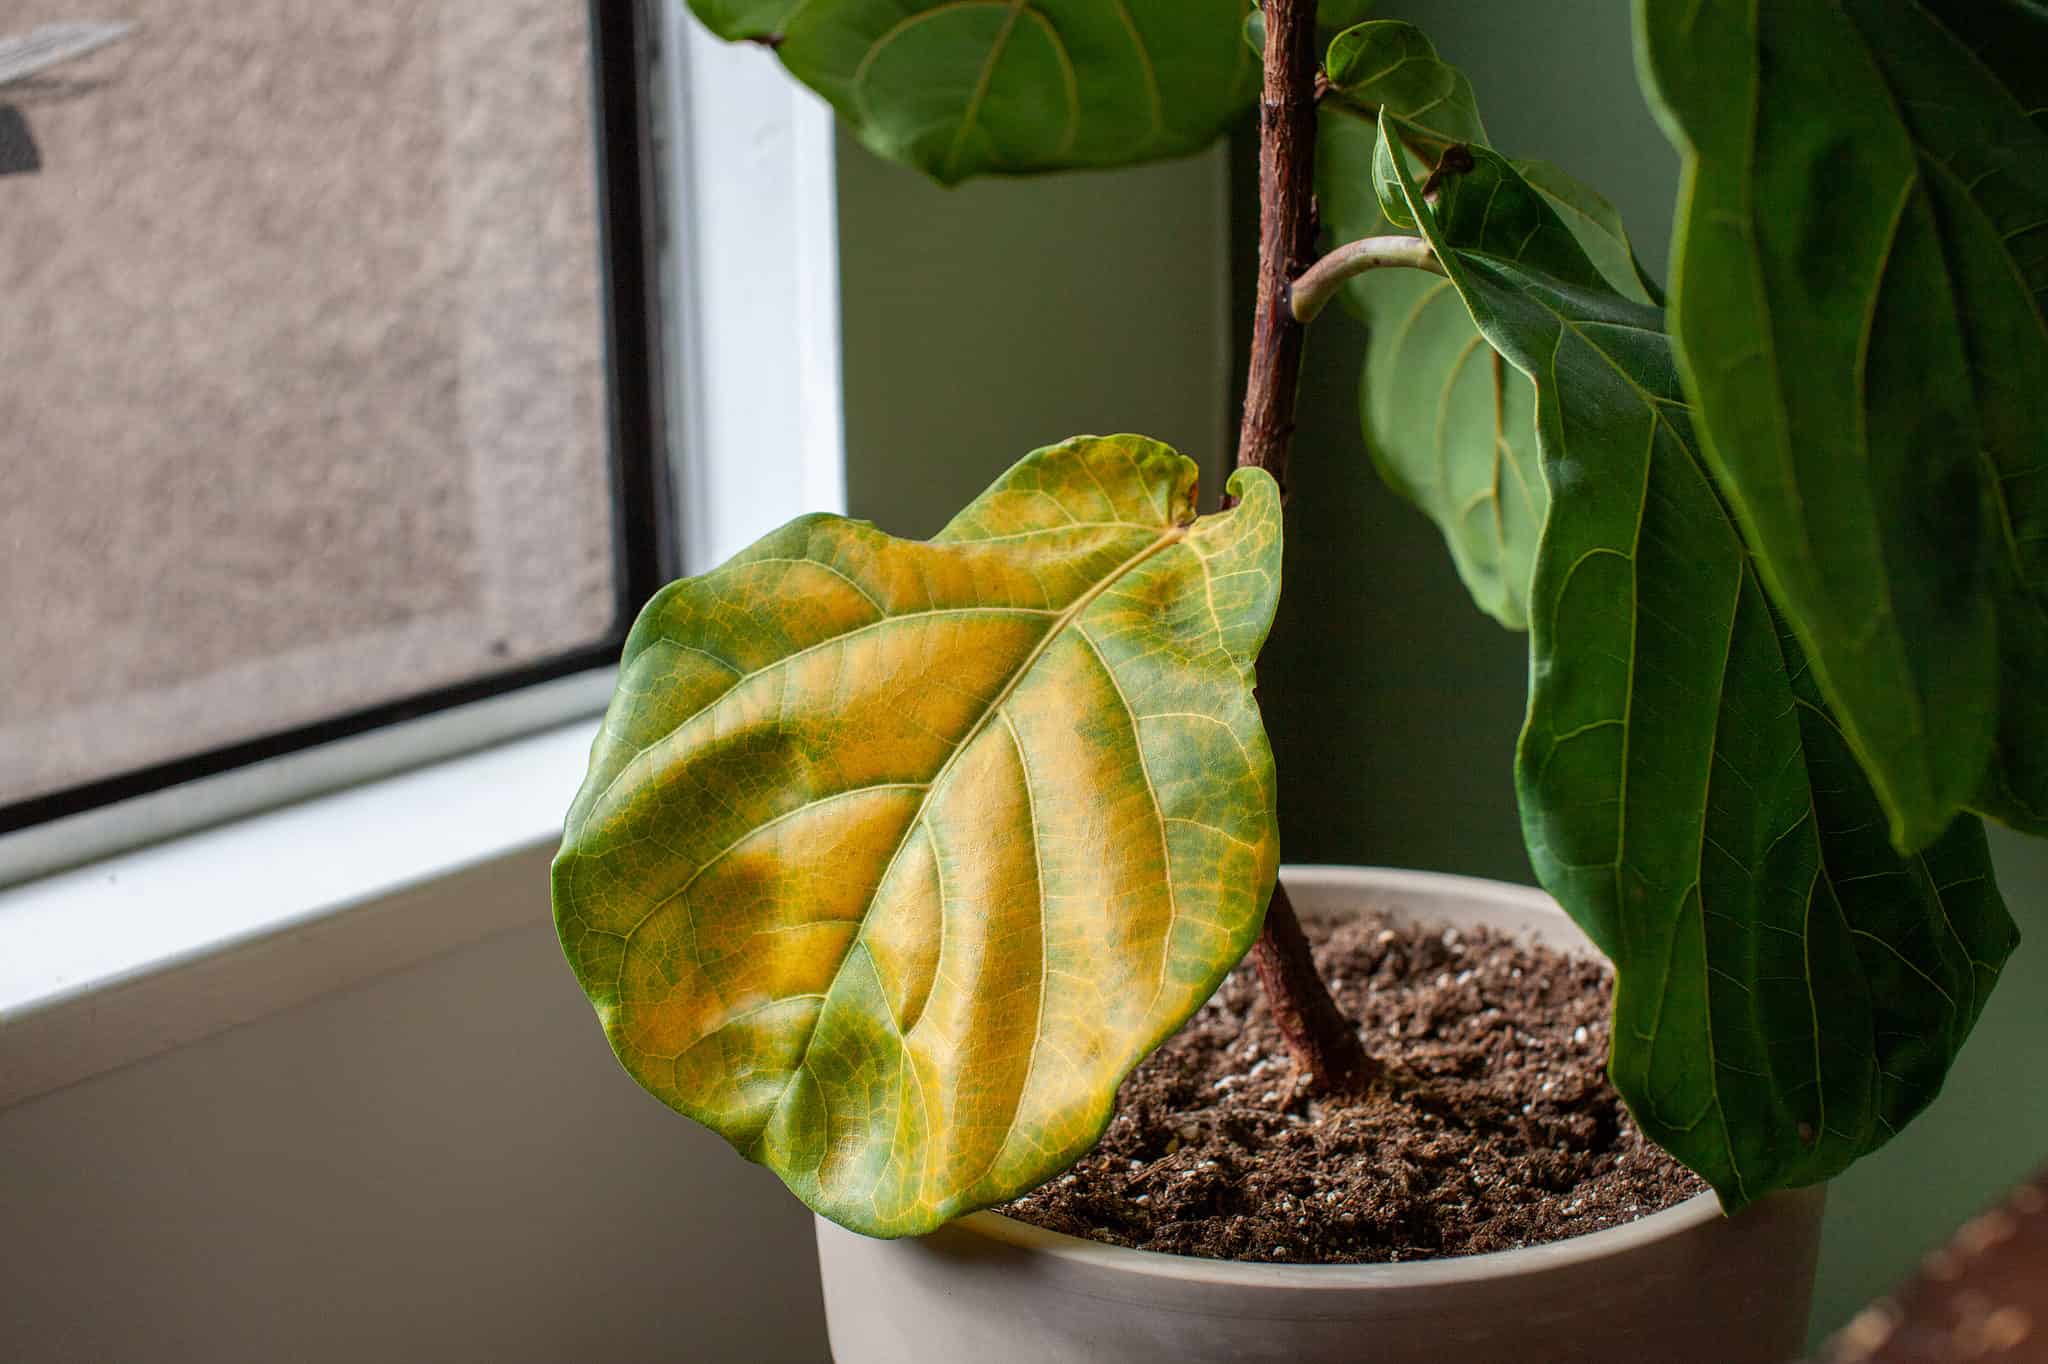 Почему желтеют листья у комнатных растений